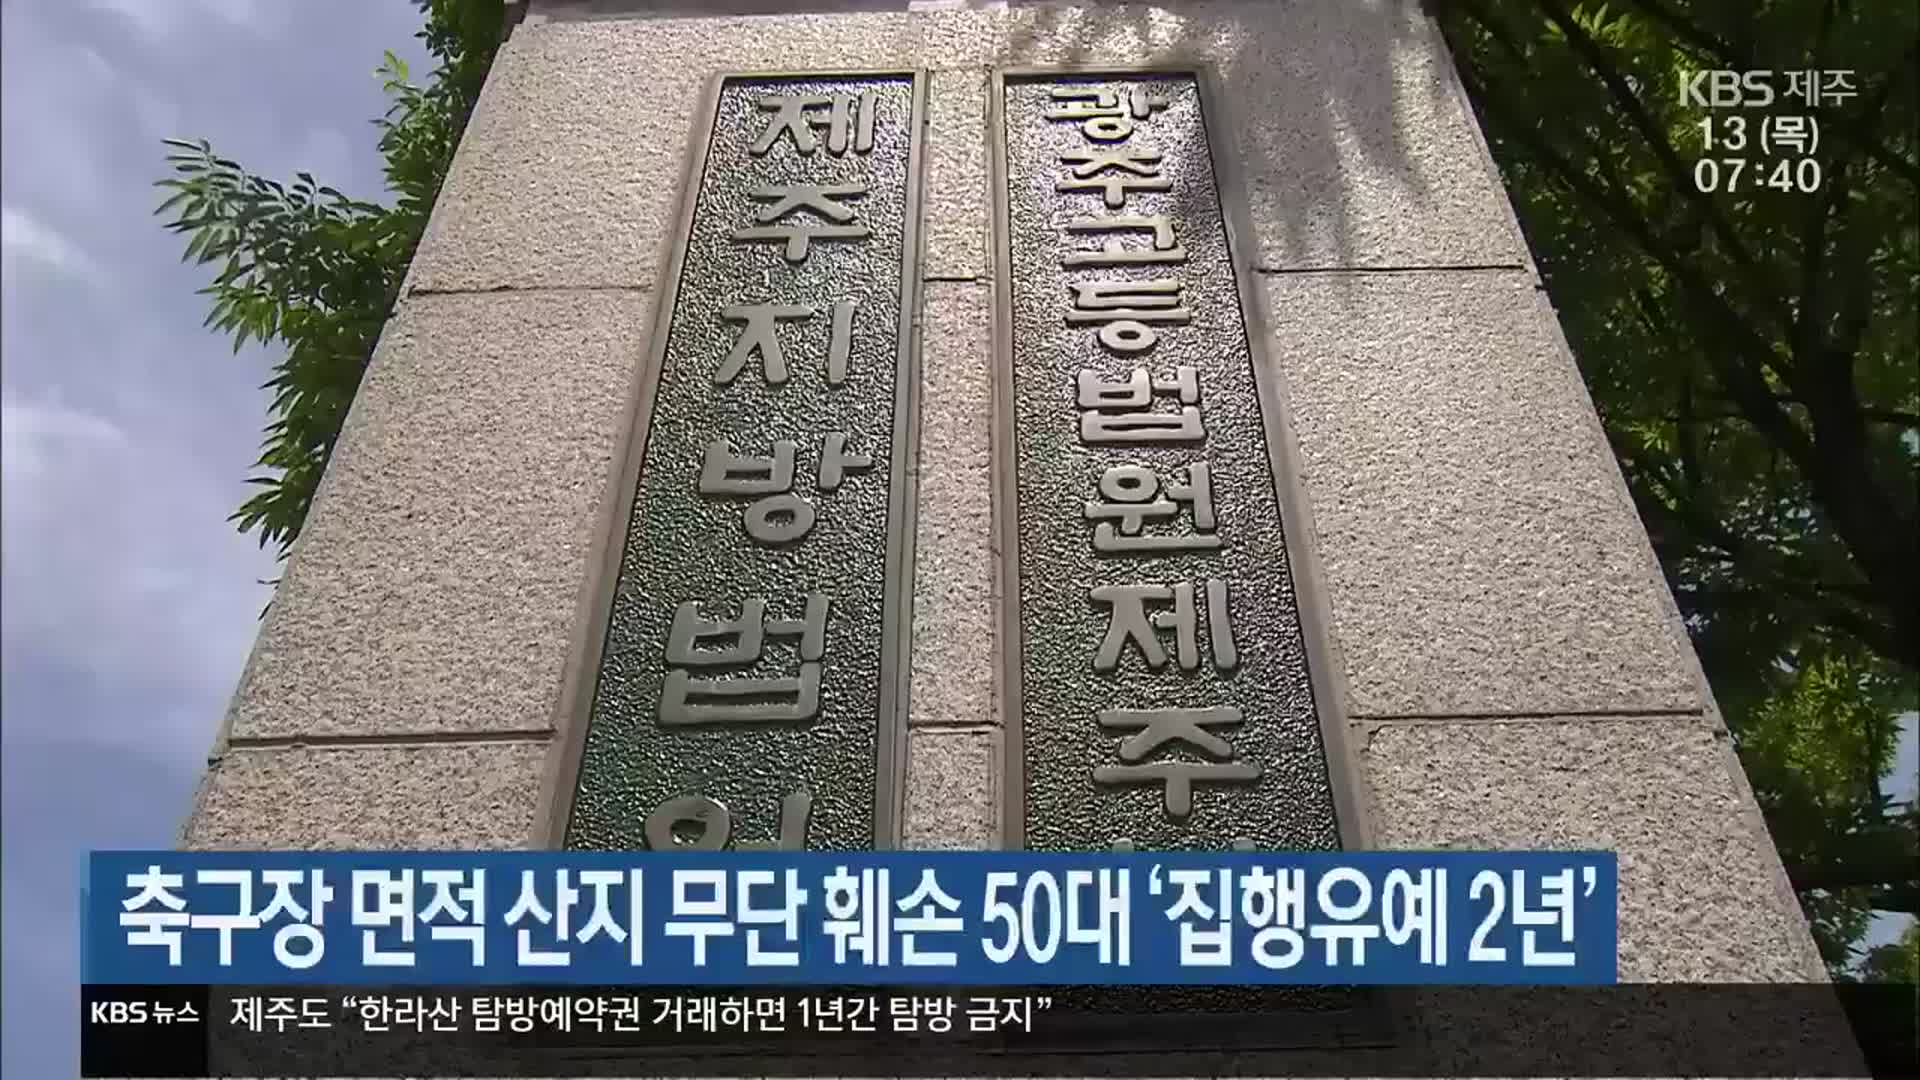 축구장 면적 산지 무단 훼손 50대 ‘집행유예 2년’